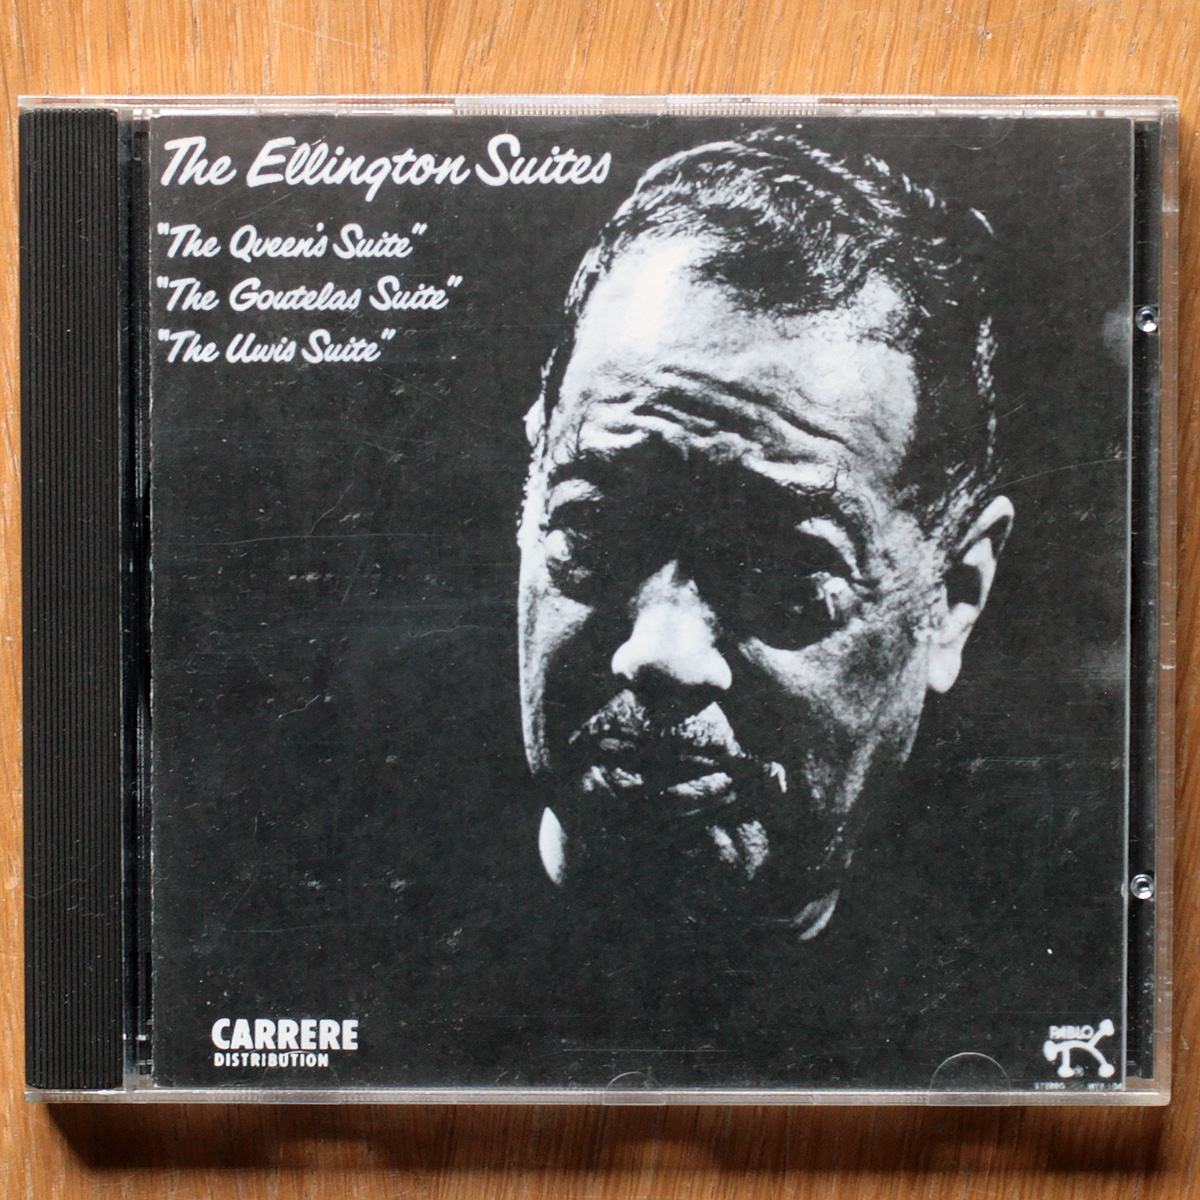 Duke Ellington ‎• The Ellington suites • 1 CD • Pablo/Carrere 98830